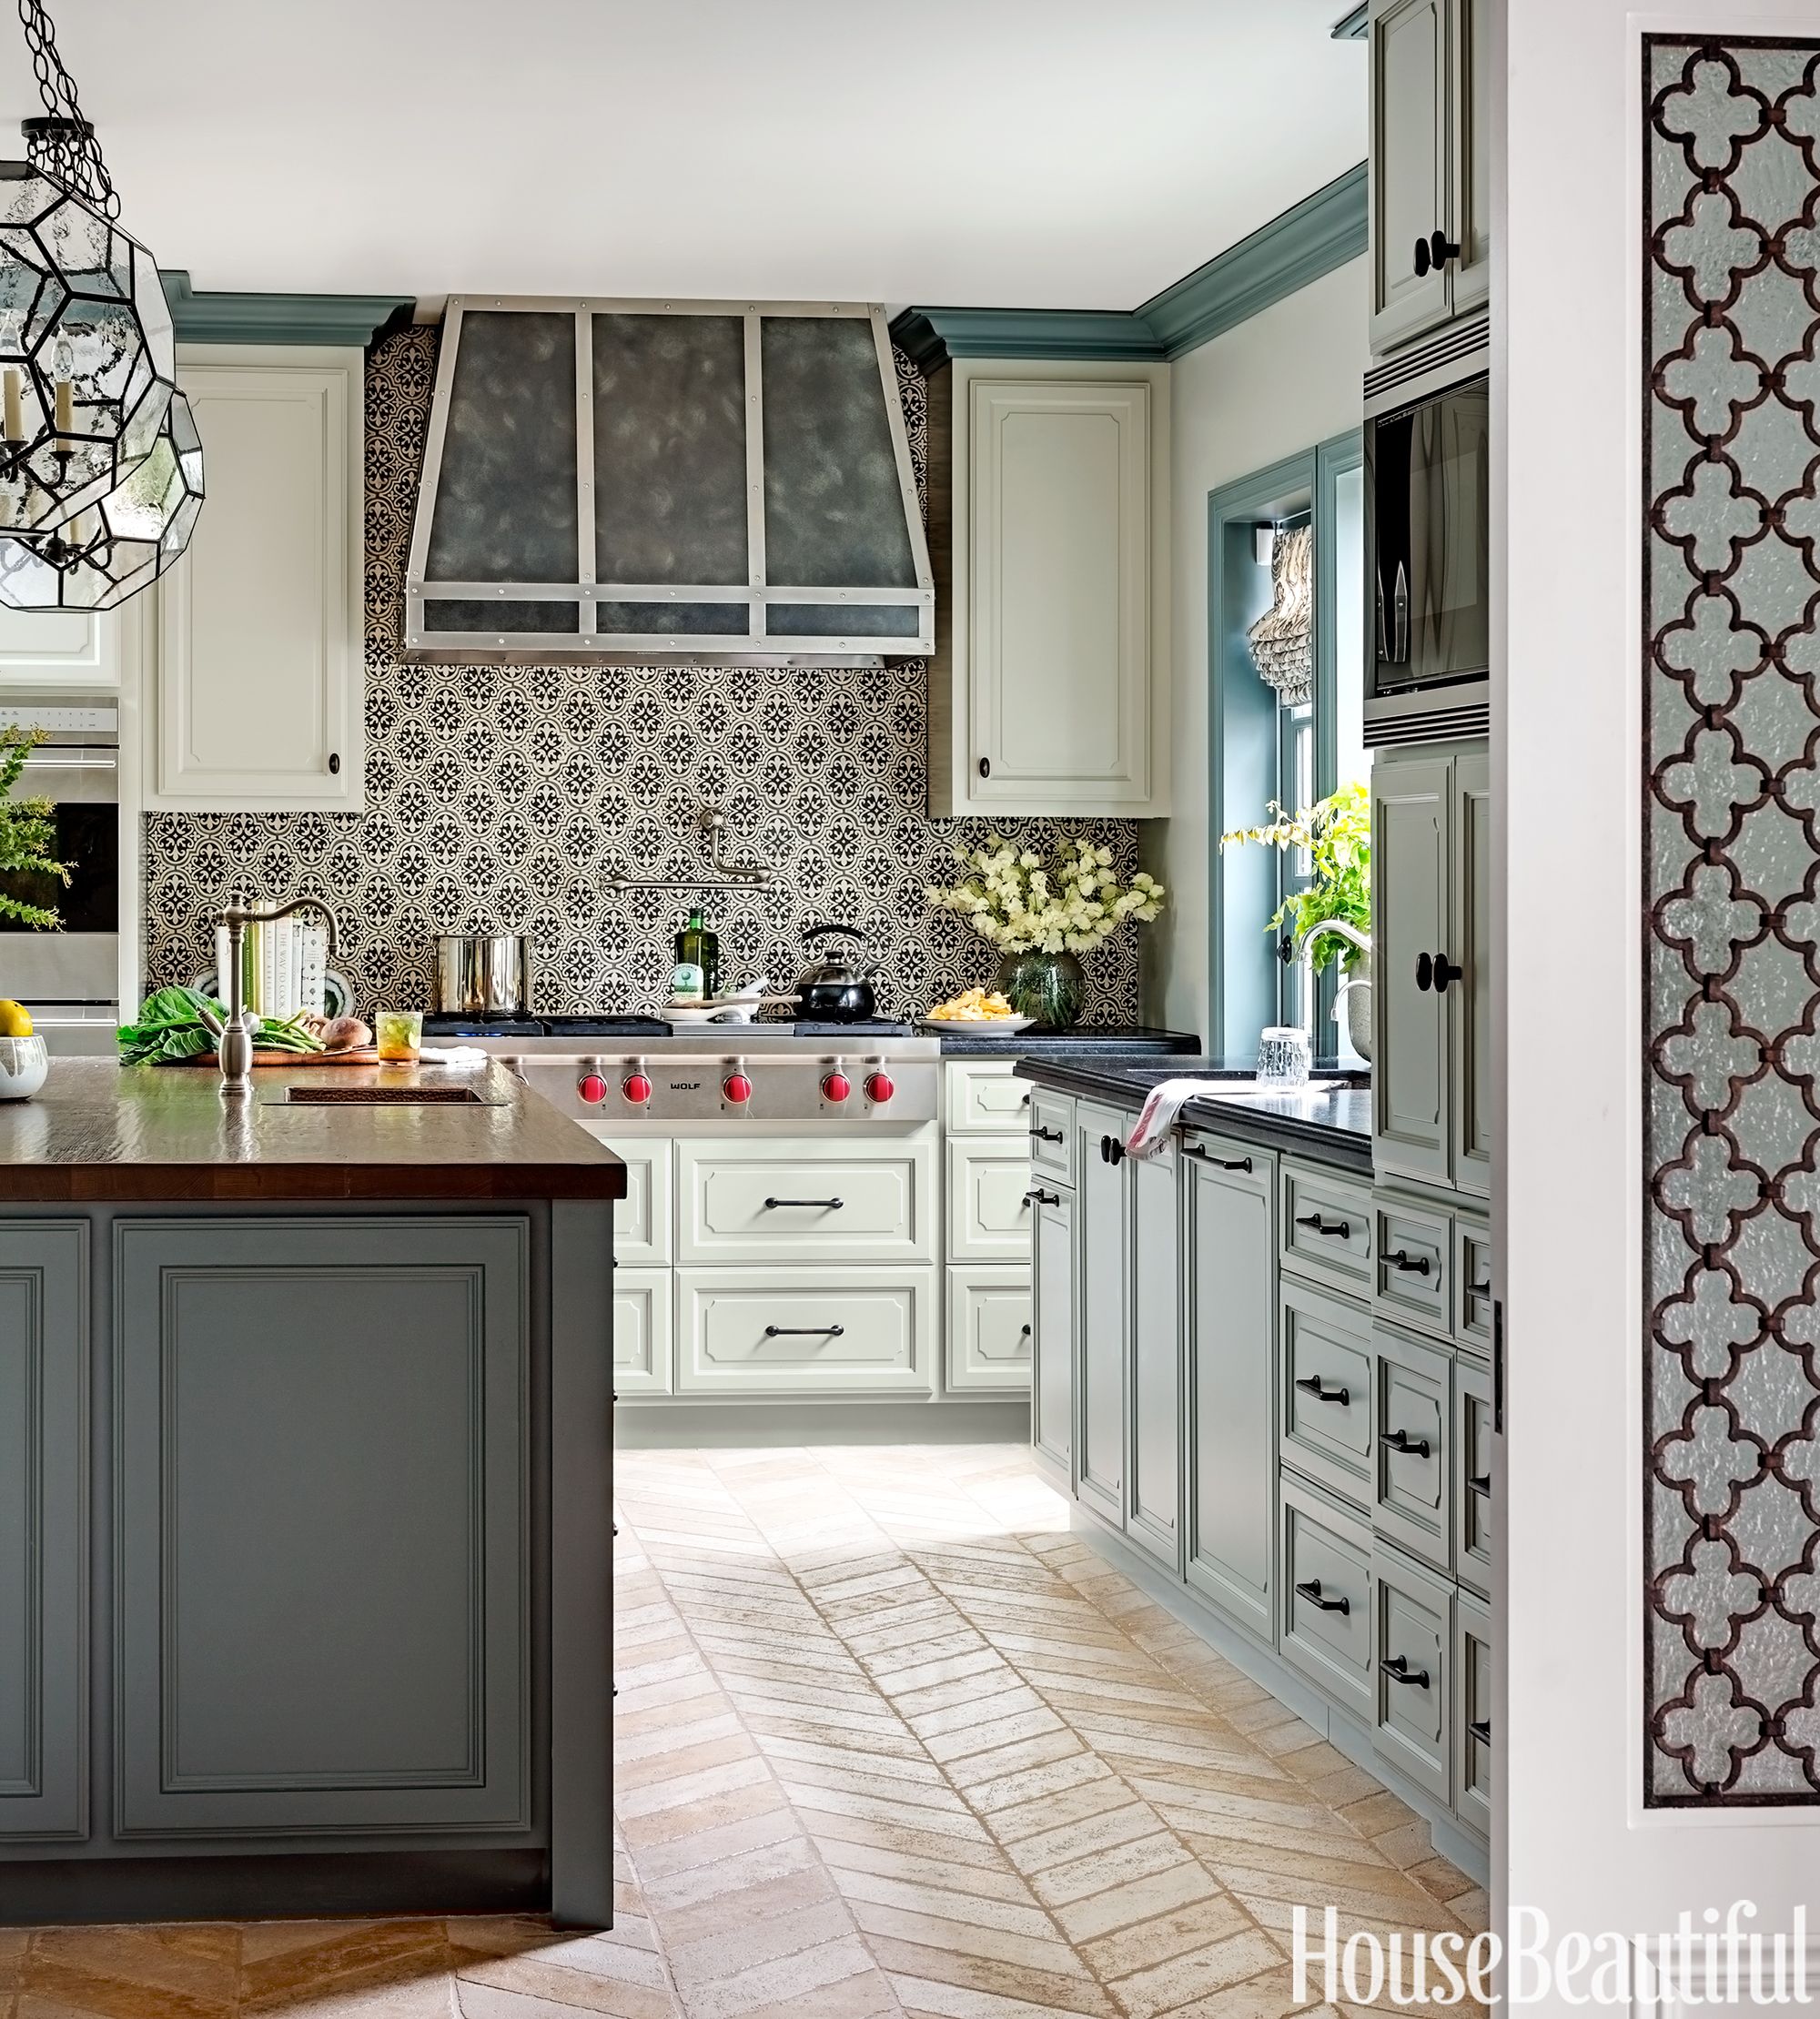 Best Kitchen Backsplash Ideas Tile Designs For Kitchen Backsplashes